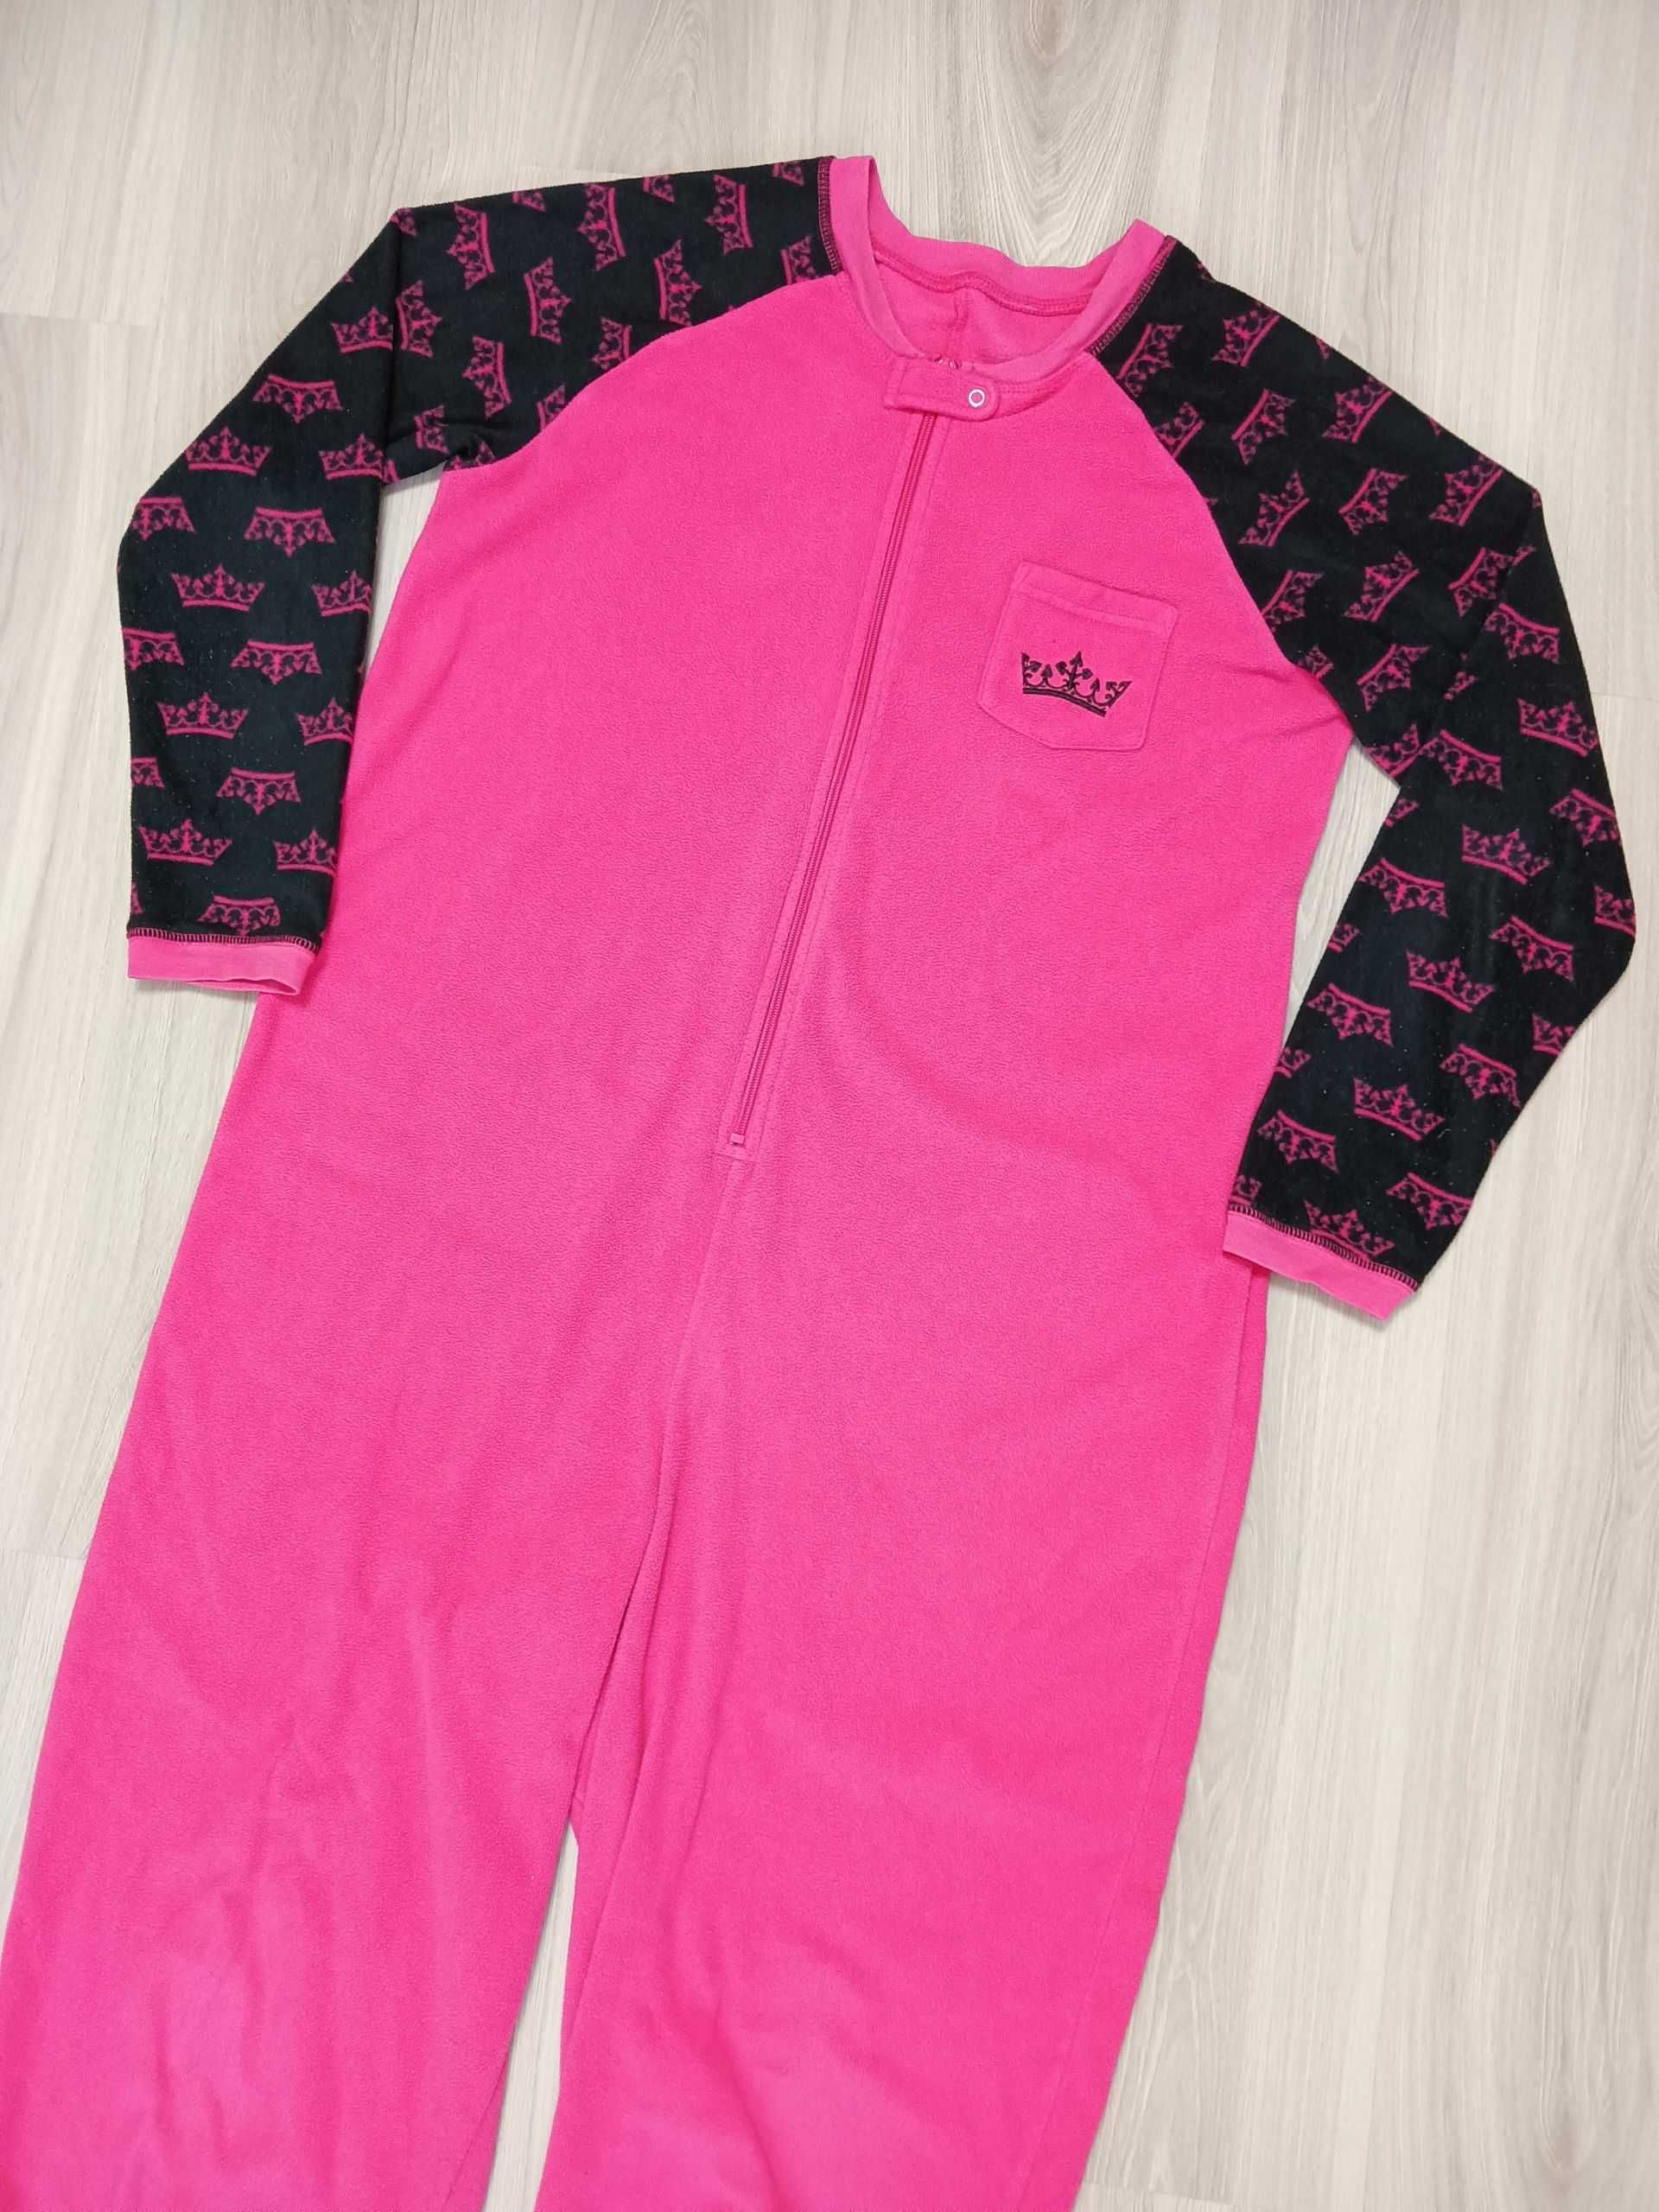 Ciepły kombinezon dresowy piżama body kostium strój różowy szlafrok M